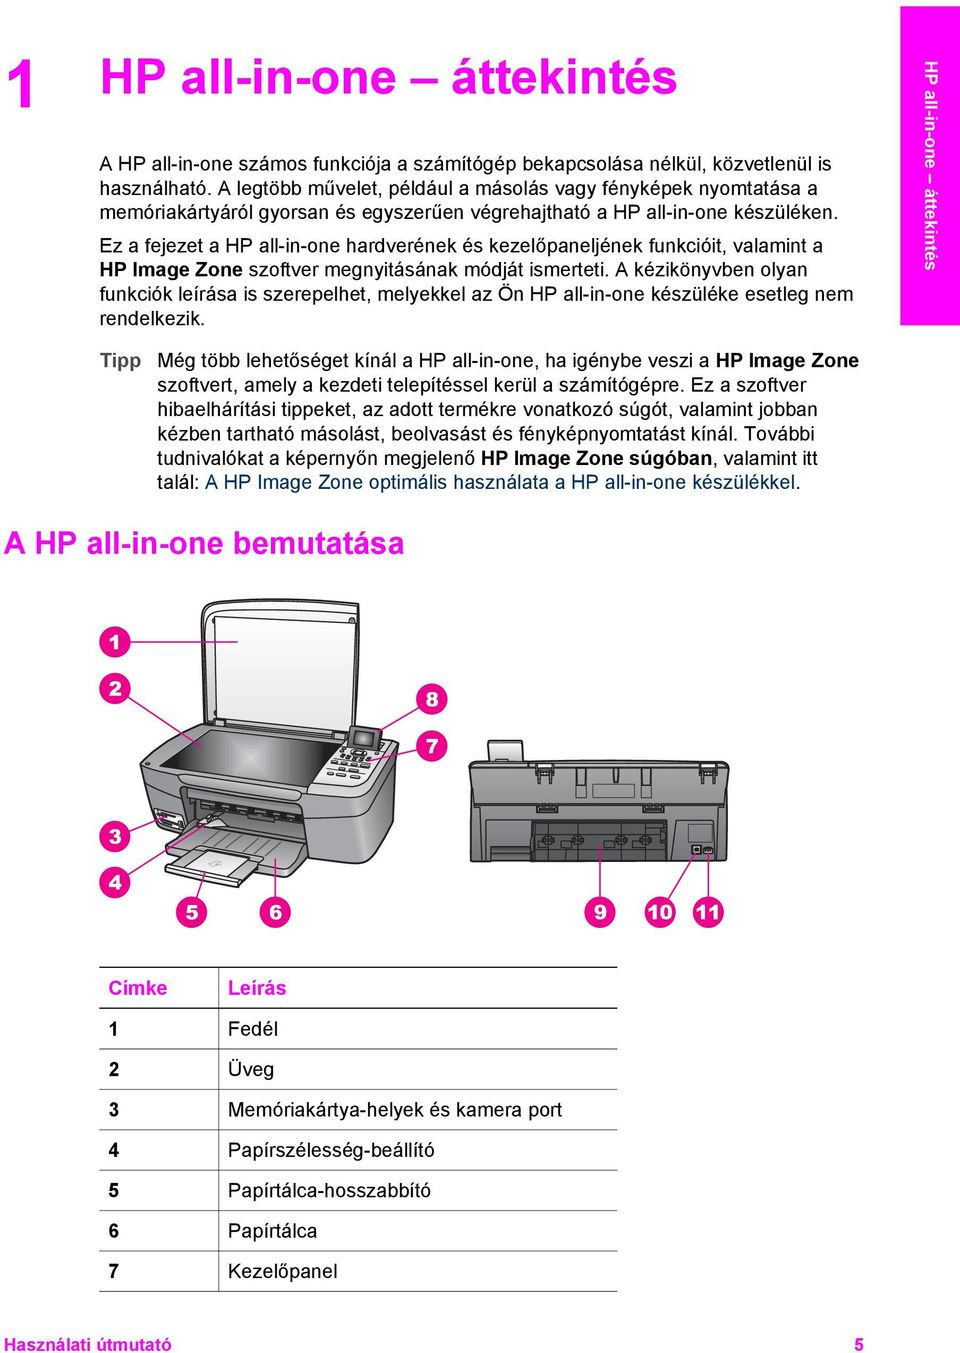 Ez a fejezet a HP all-in-one hardverének és kezelőpaneljének funkcióit, valamint a HP Image Zone szoftver megnyitásának módját ismerteti.